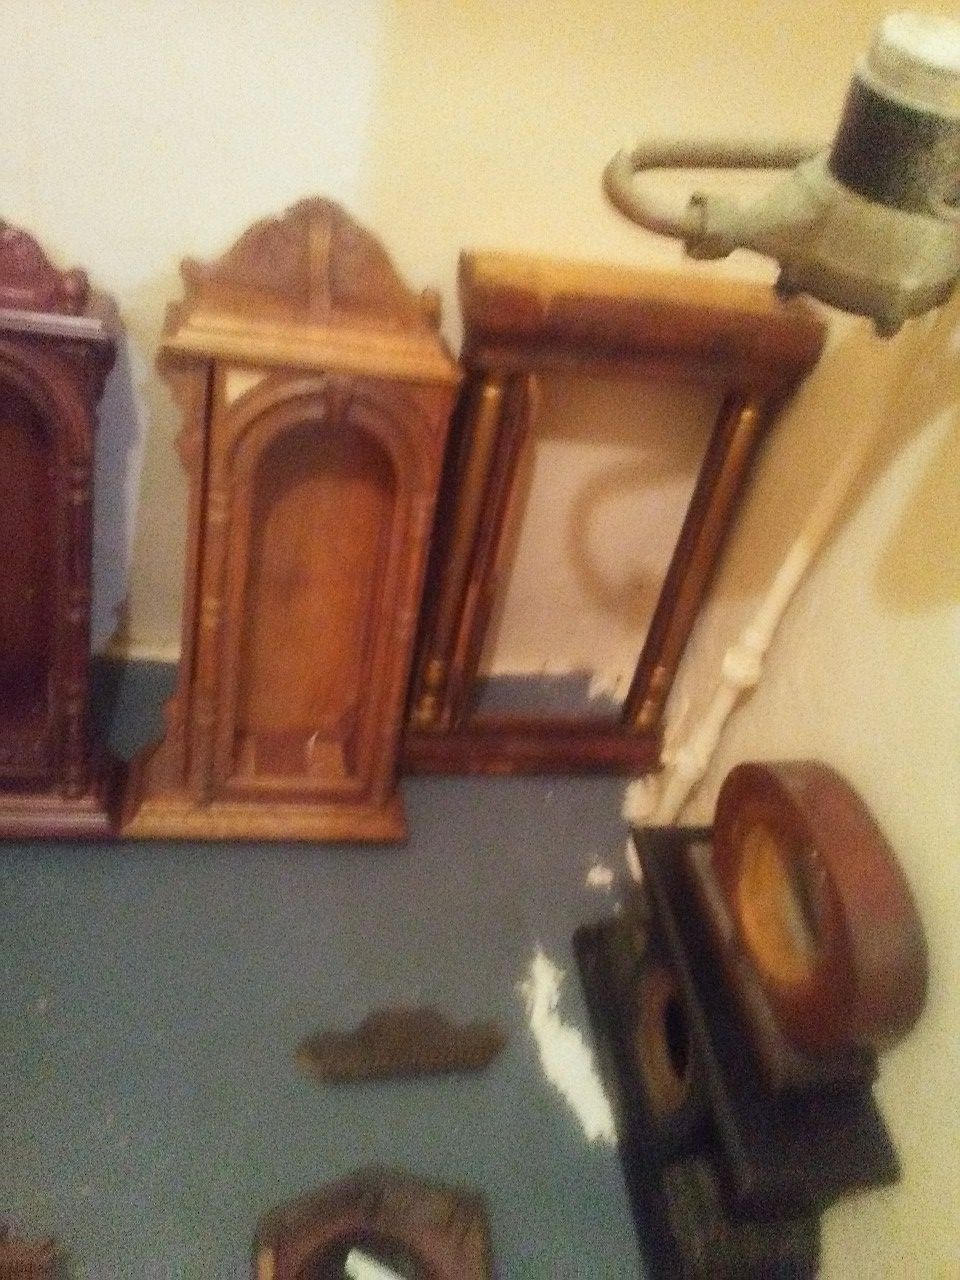 Antique clock cases